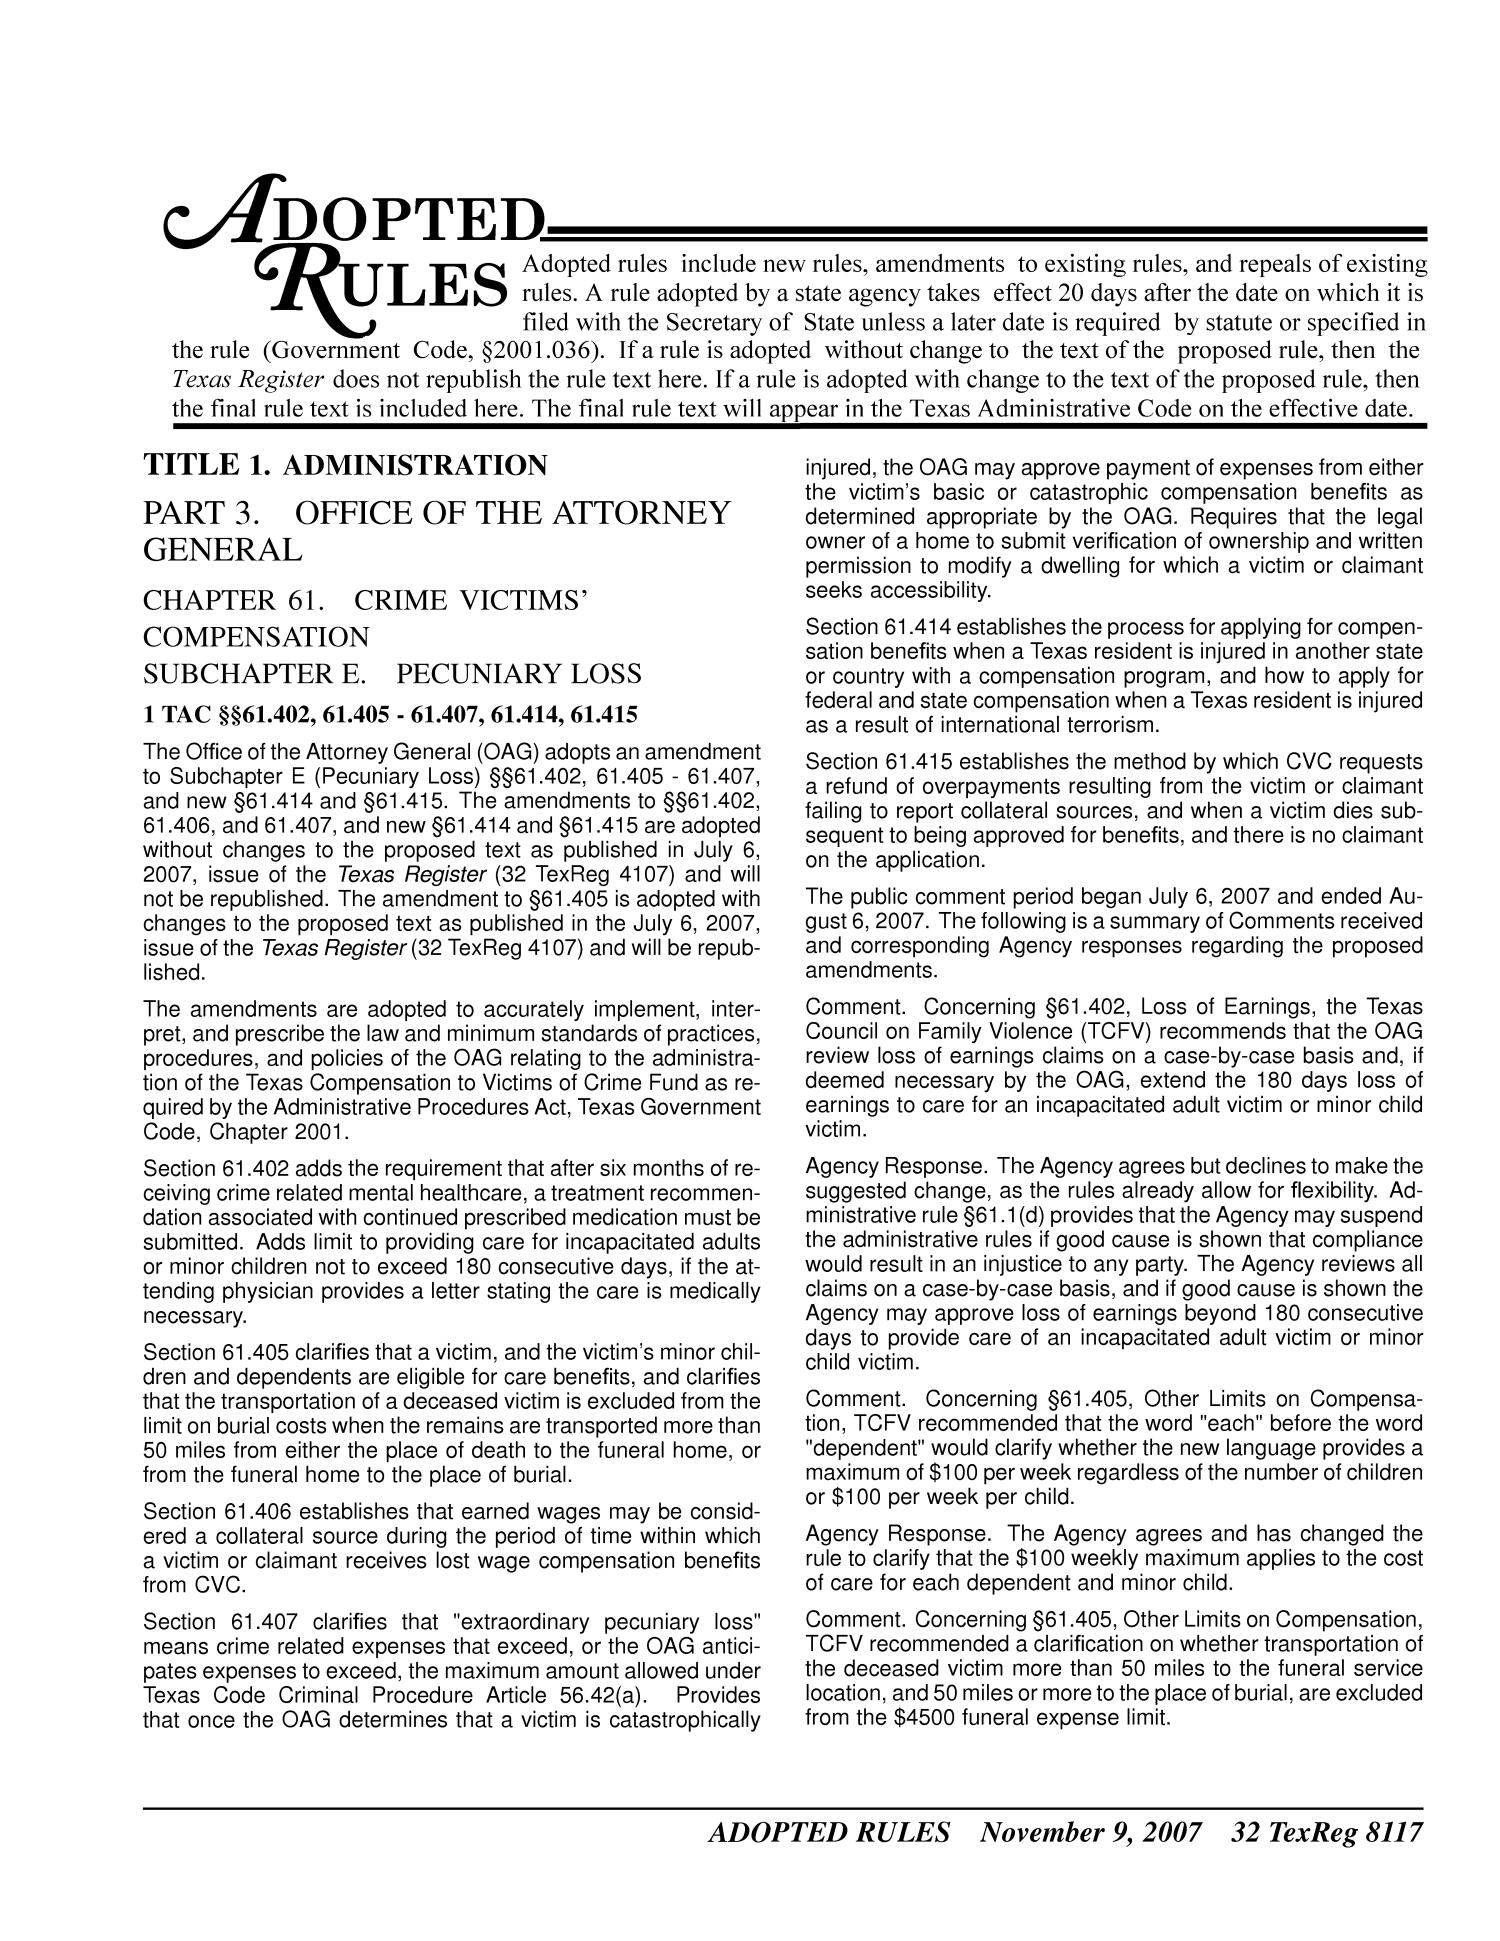 Texas Register, Volume 32, Number 45, Pages 8061-8222, November 9, 2007
                                                
                                                    8117
                                                